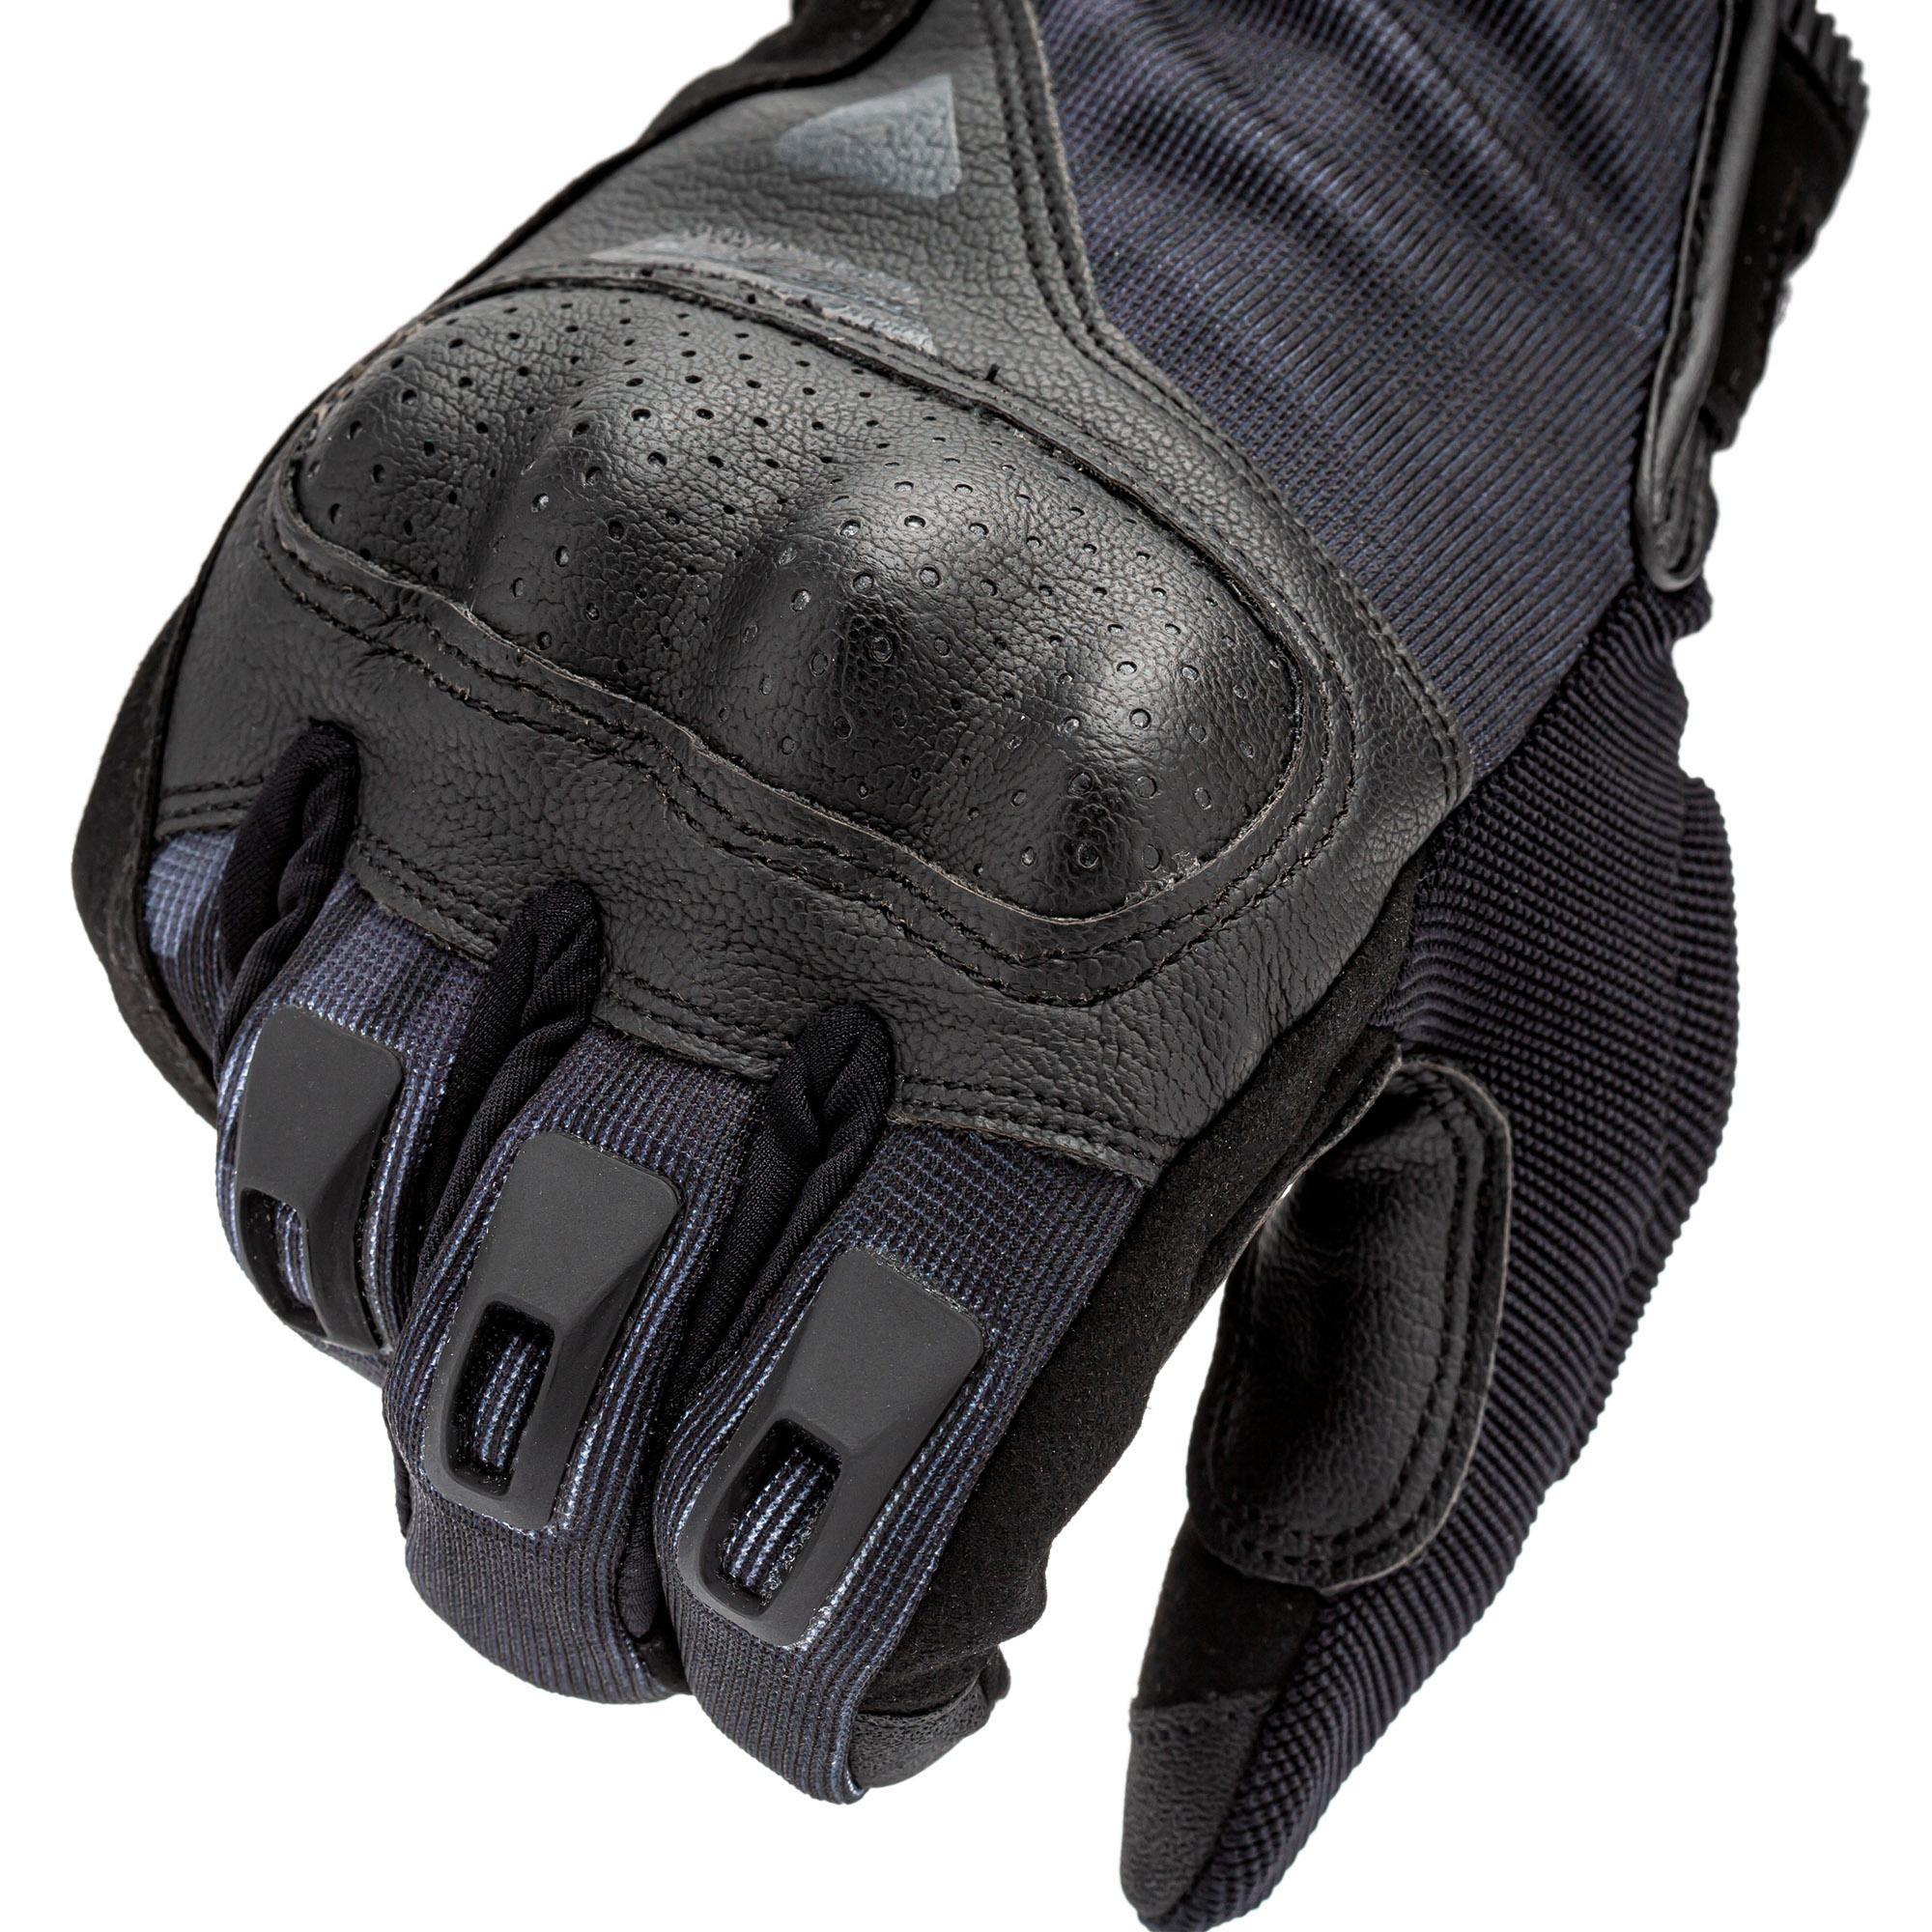 Stacca Gloves Black–Black Tucano Urbano